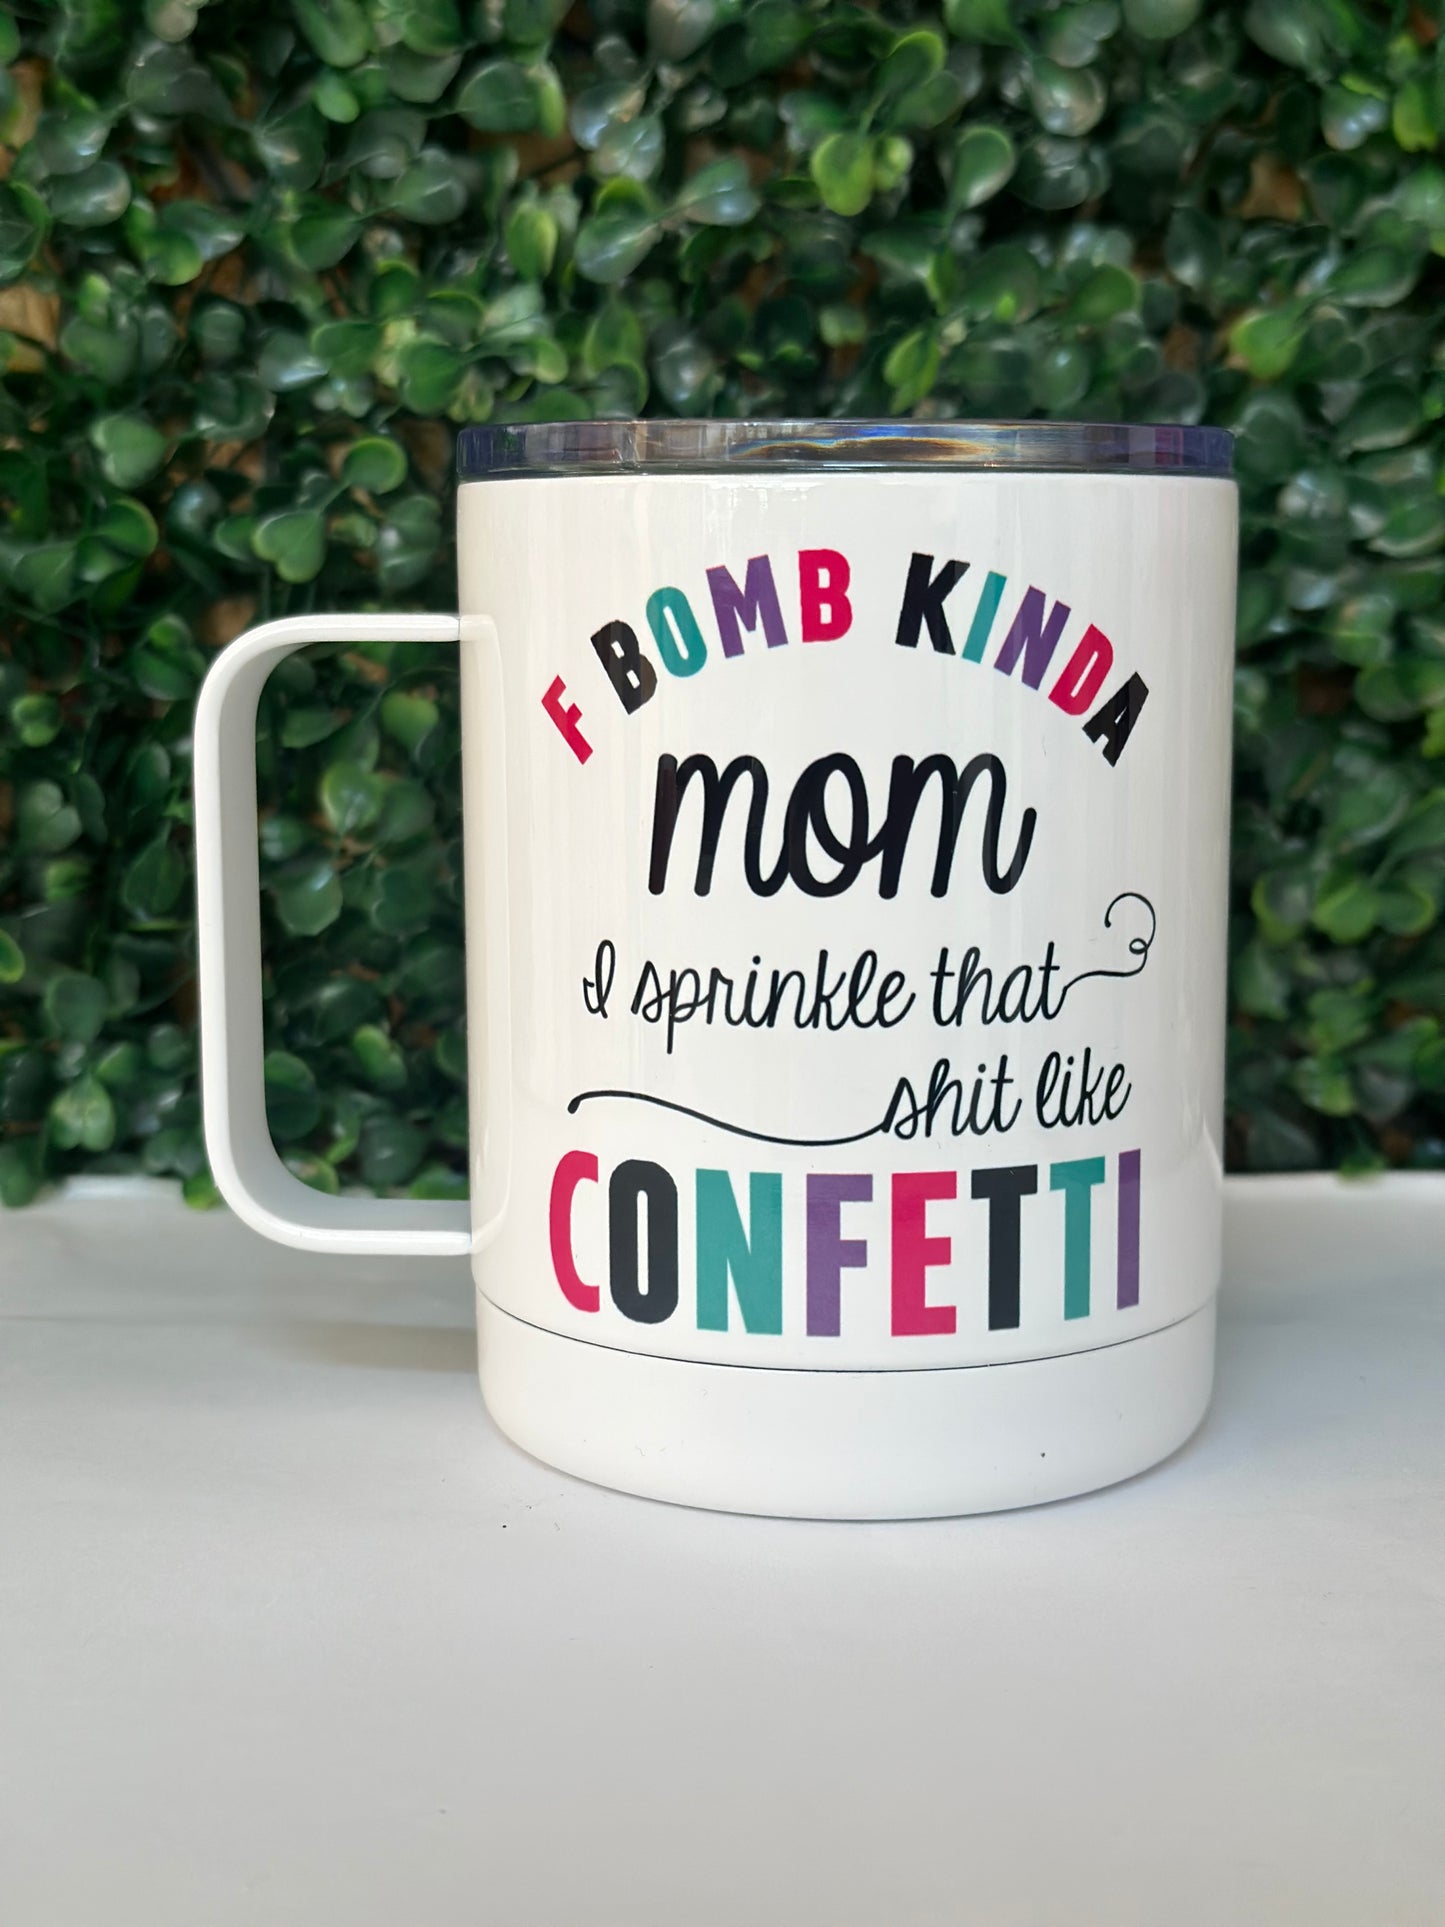 F Bomb Kinda Mom mug